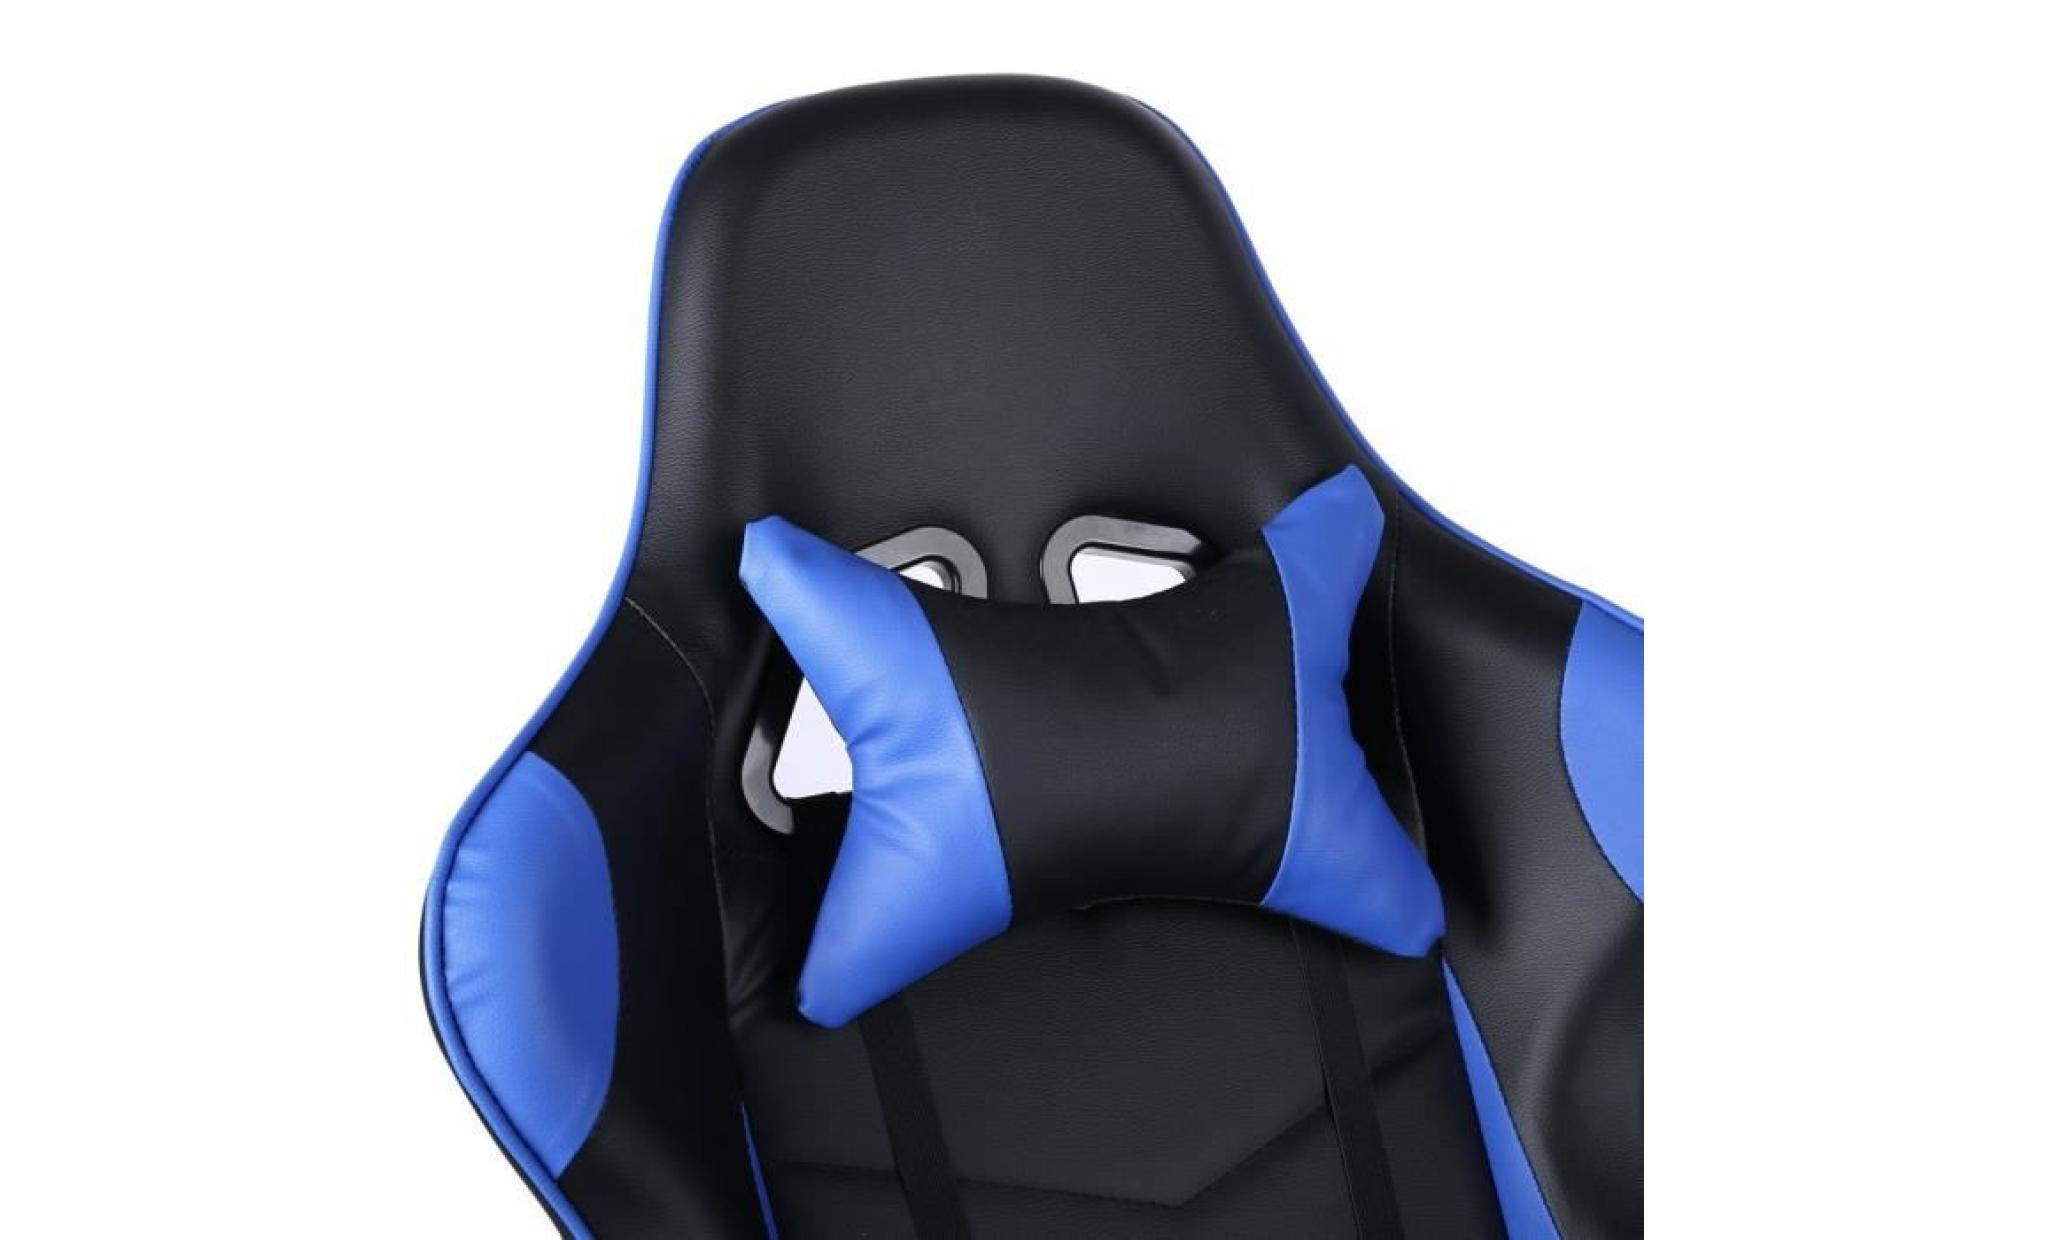 le roi du monde   chaise de jeu hauteur de siège réglable roulettes à 360 degrés bleu pas cher